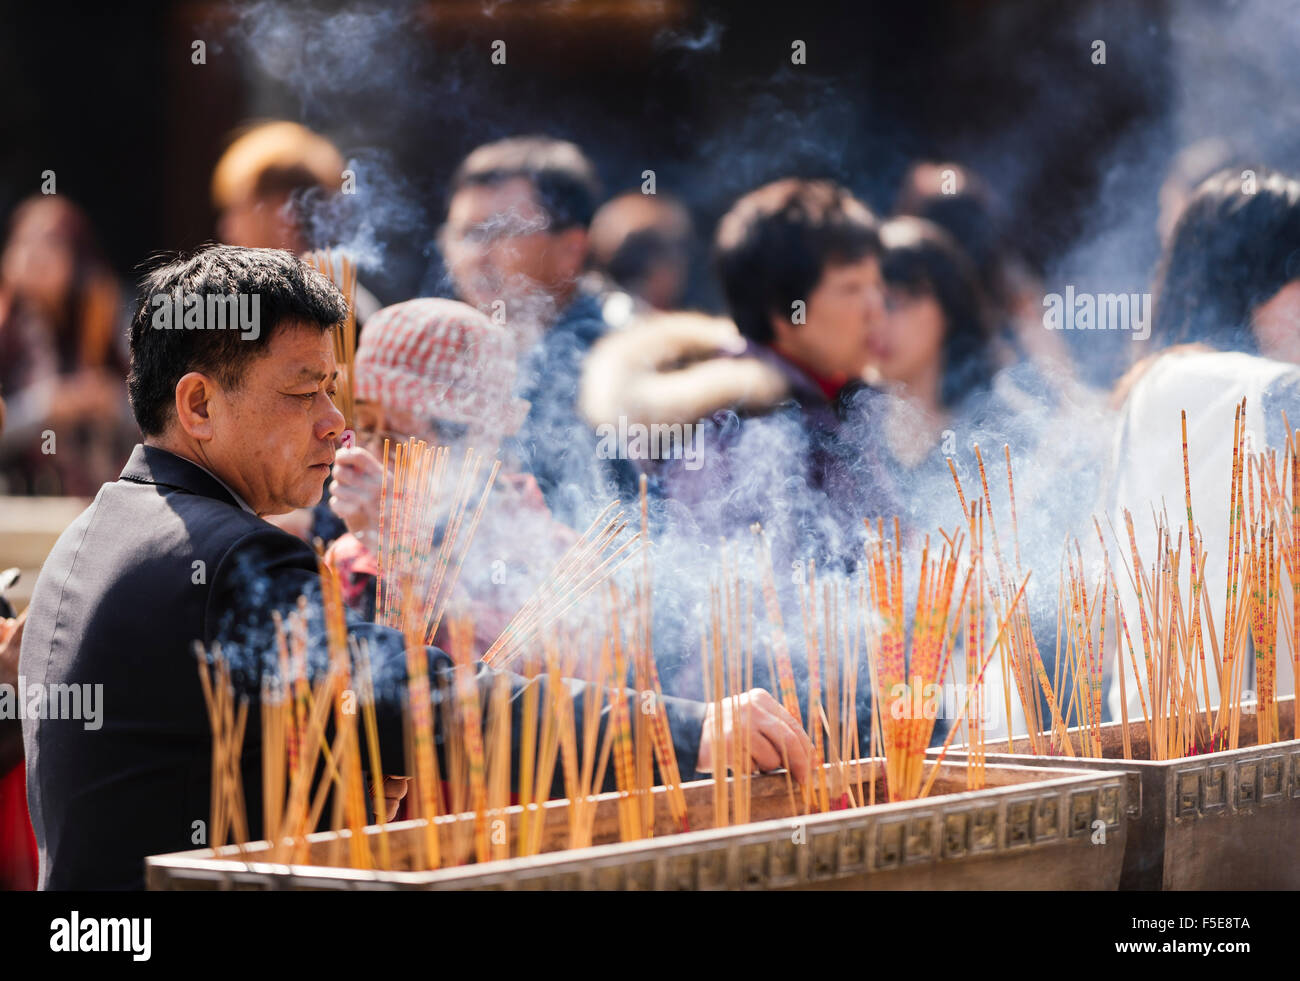 La gente brucia incenso al di fuori di Wong Tai Sin Temple, Kowloon, Hong Kong, Cina, Asia Foto Stock